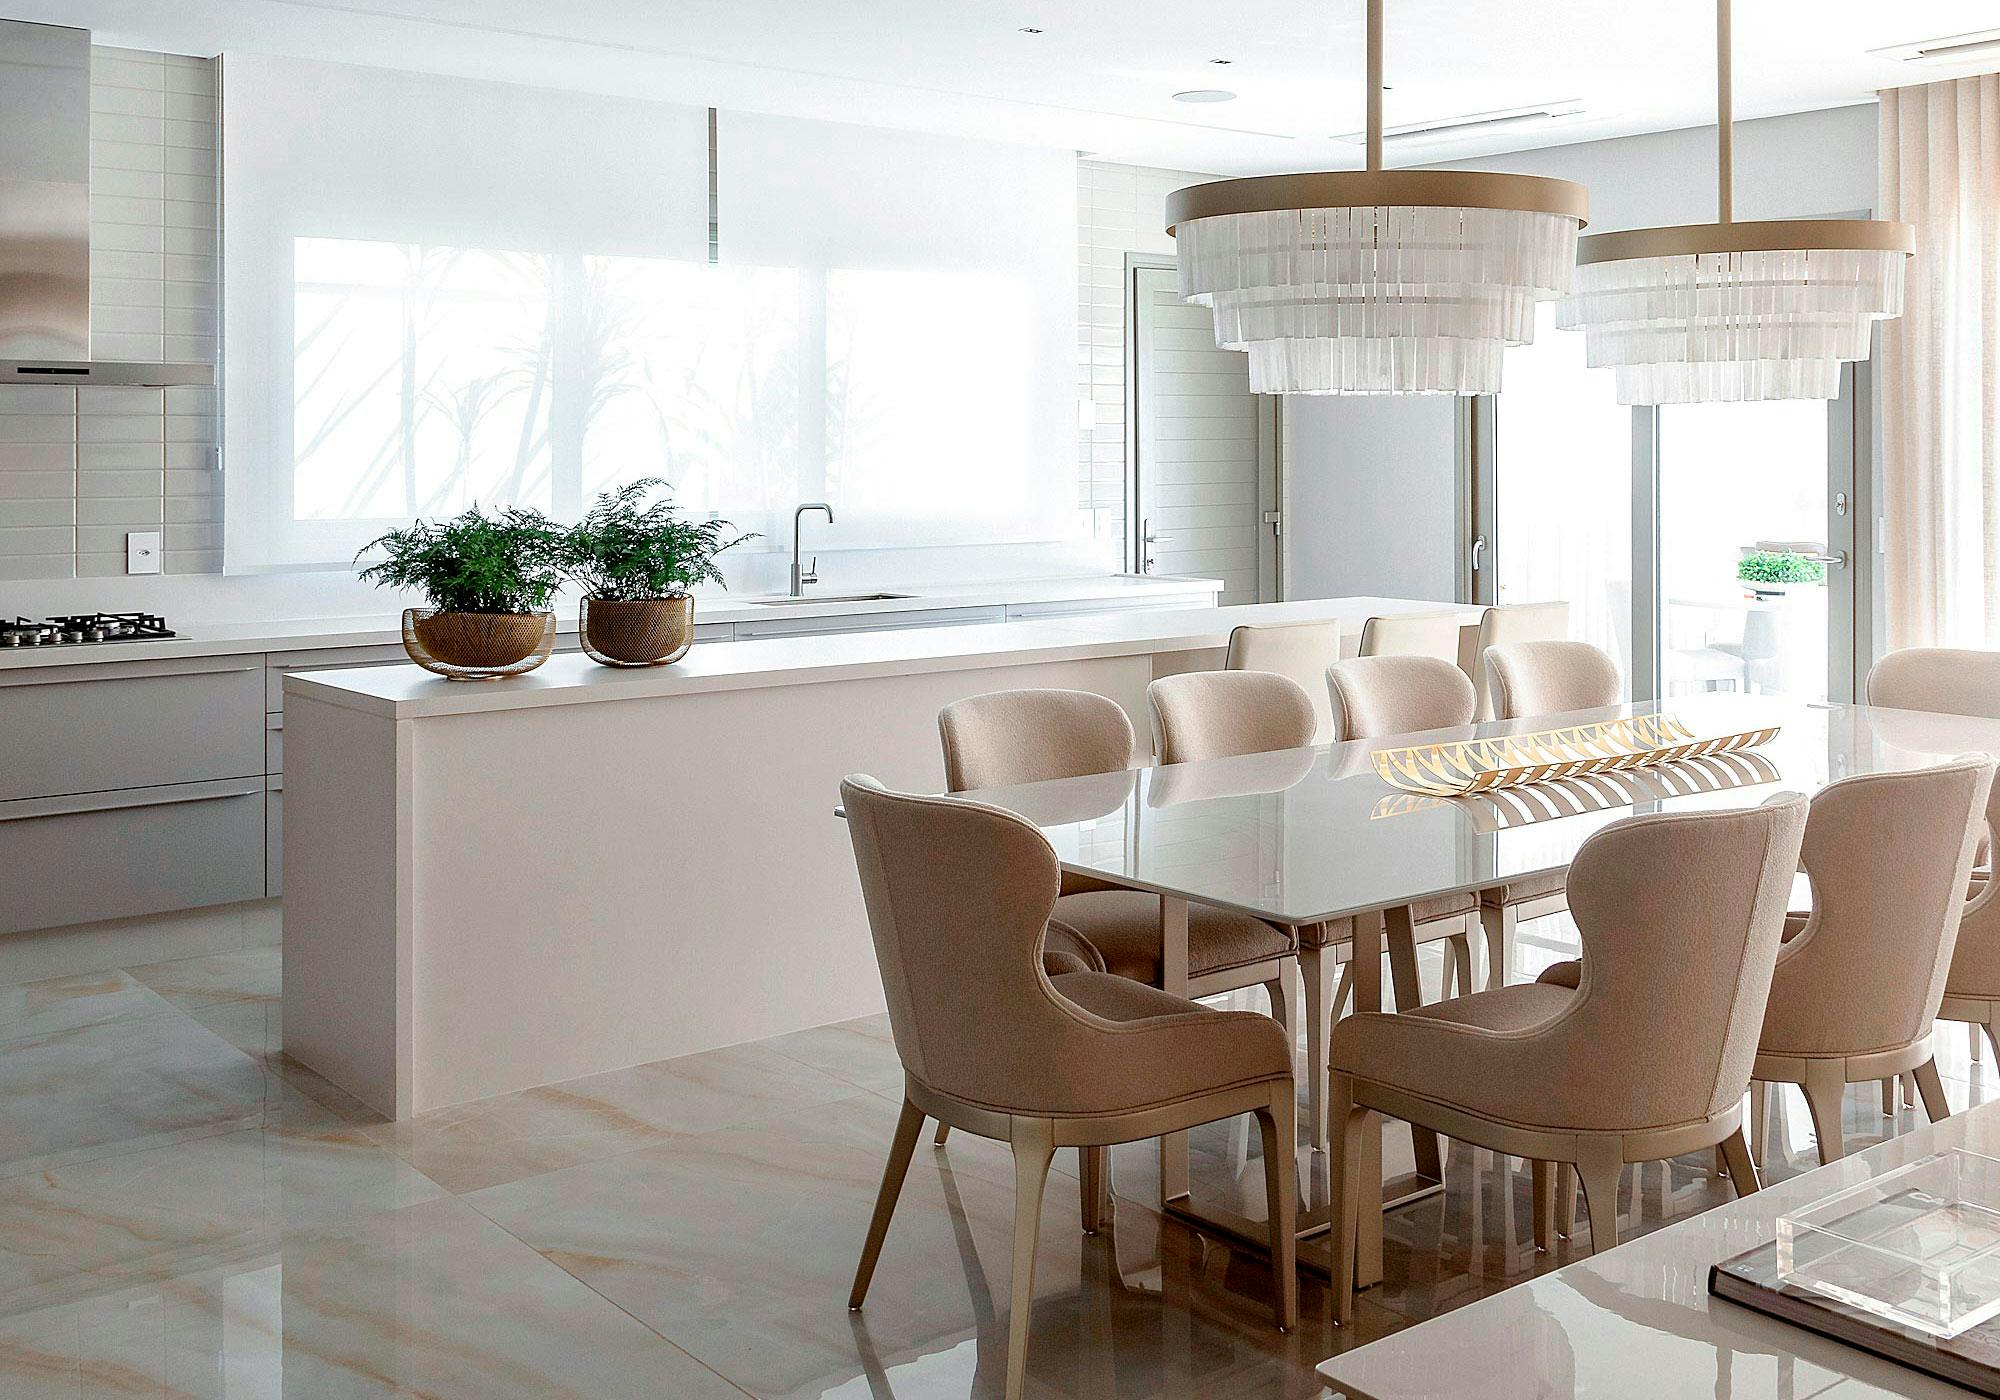 Bildnummer 35 des aktuellen Abschnitts von An open concept kitchen by MS2 Design Studio in a luxury South Beach condo von Cosentino Deutschland